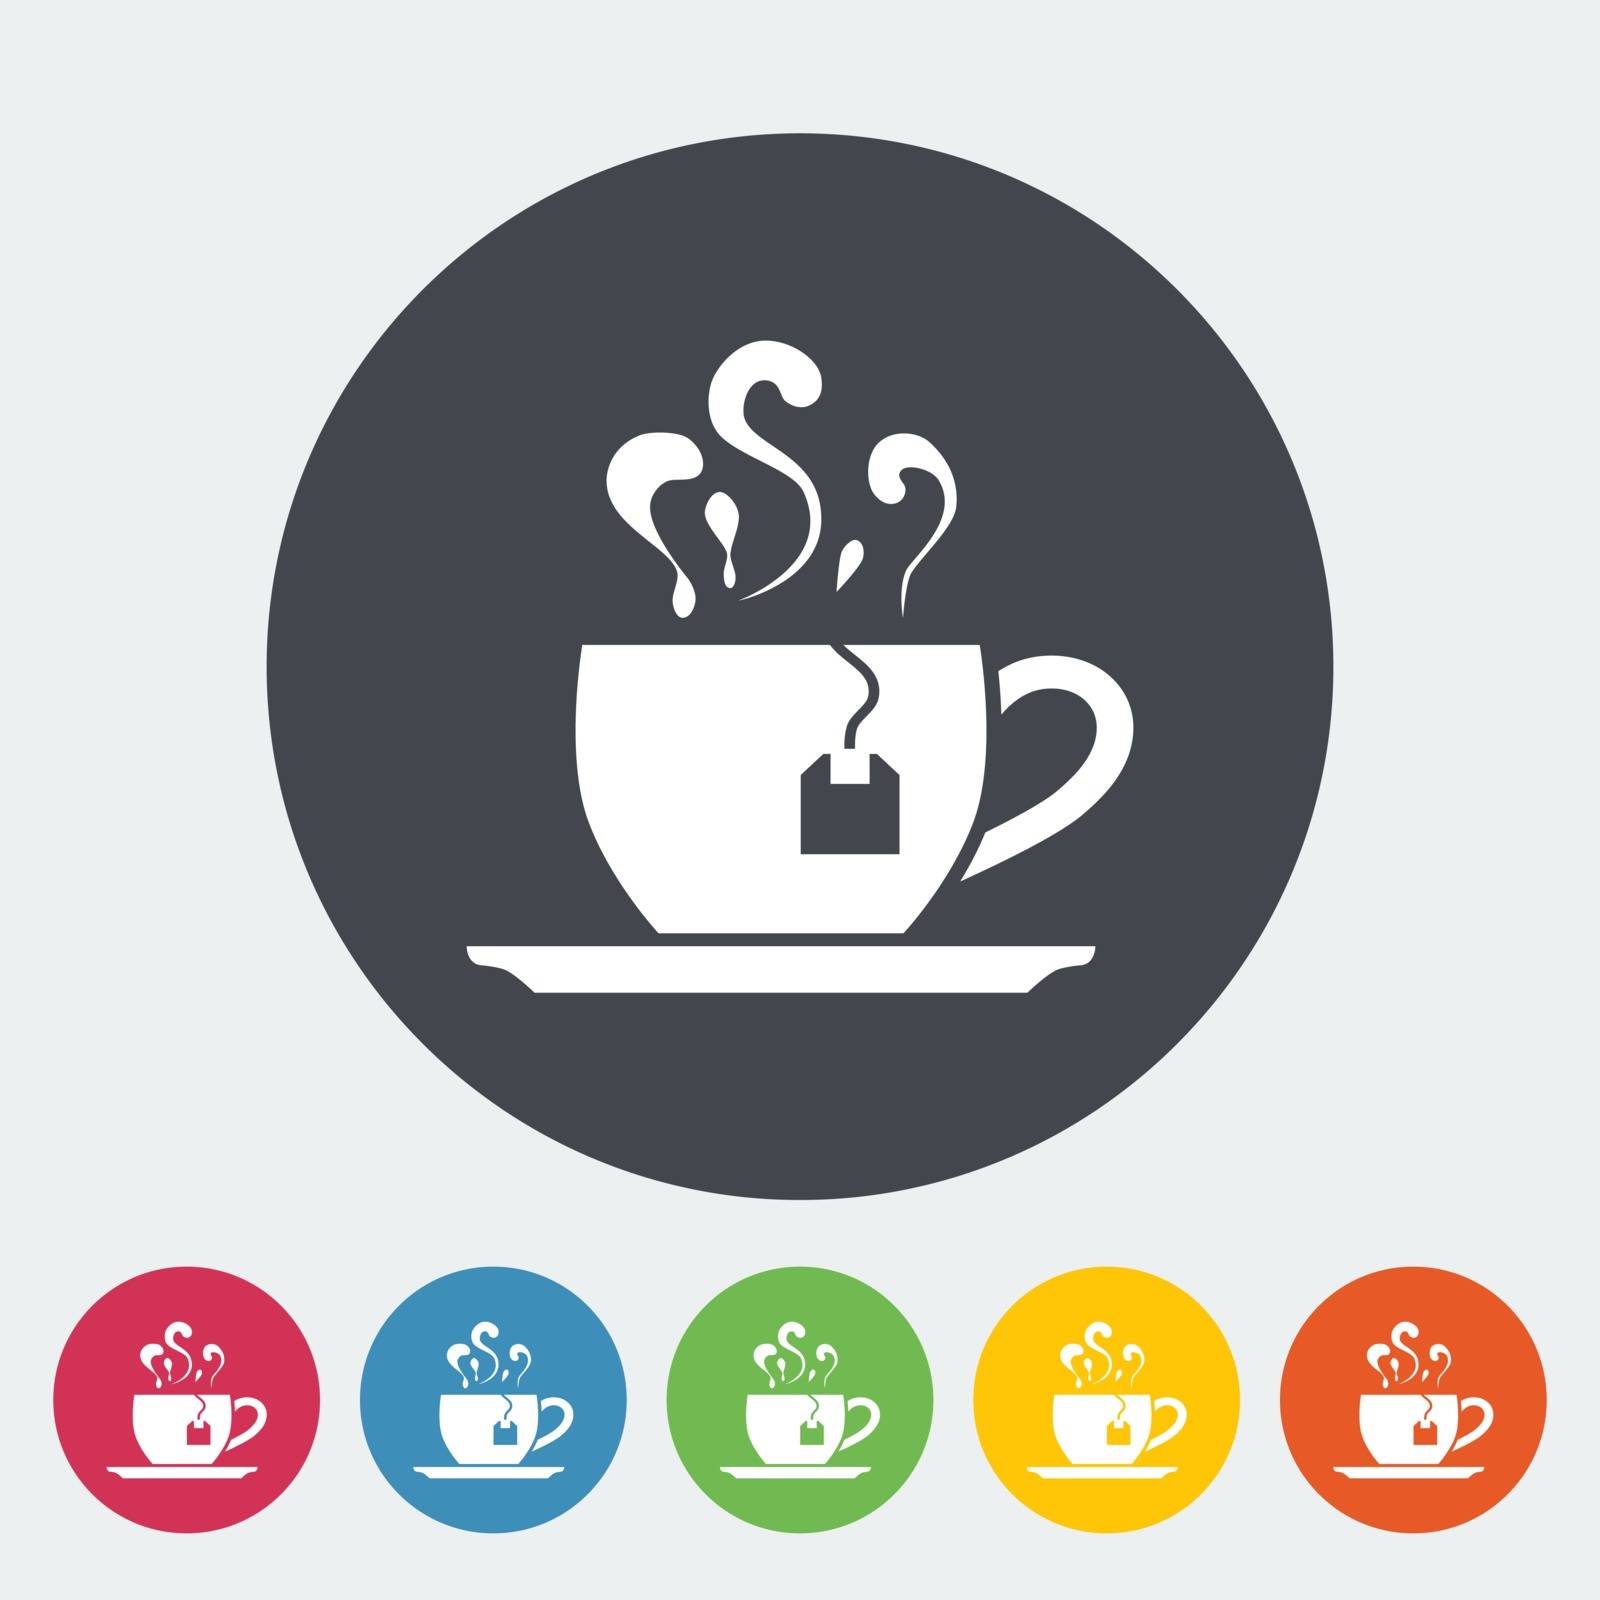 Tea. Single flat icon on the button. Vector illustration.